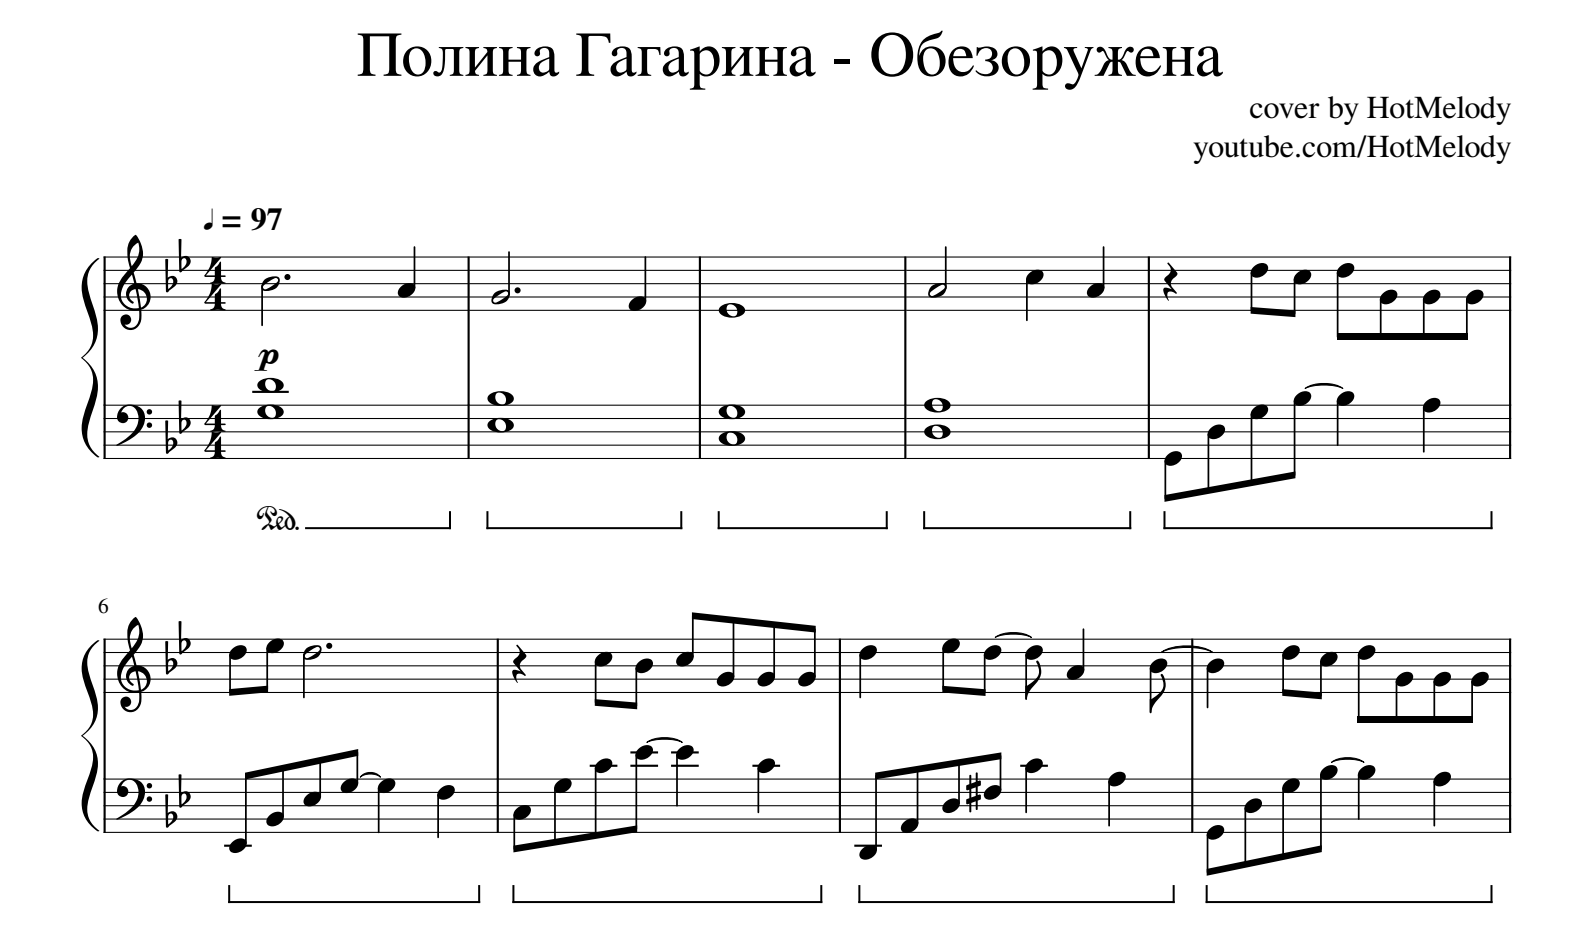 Текст песни полины гагариной нагадай. Ноты Гагарина Обезоружена для фортепиано.